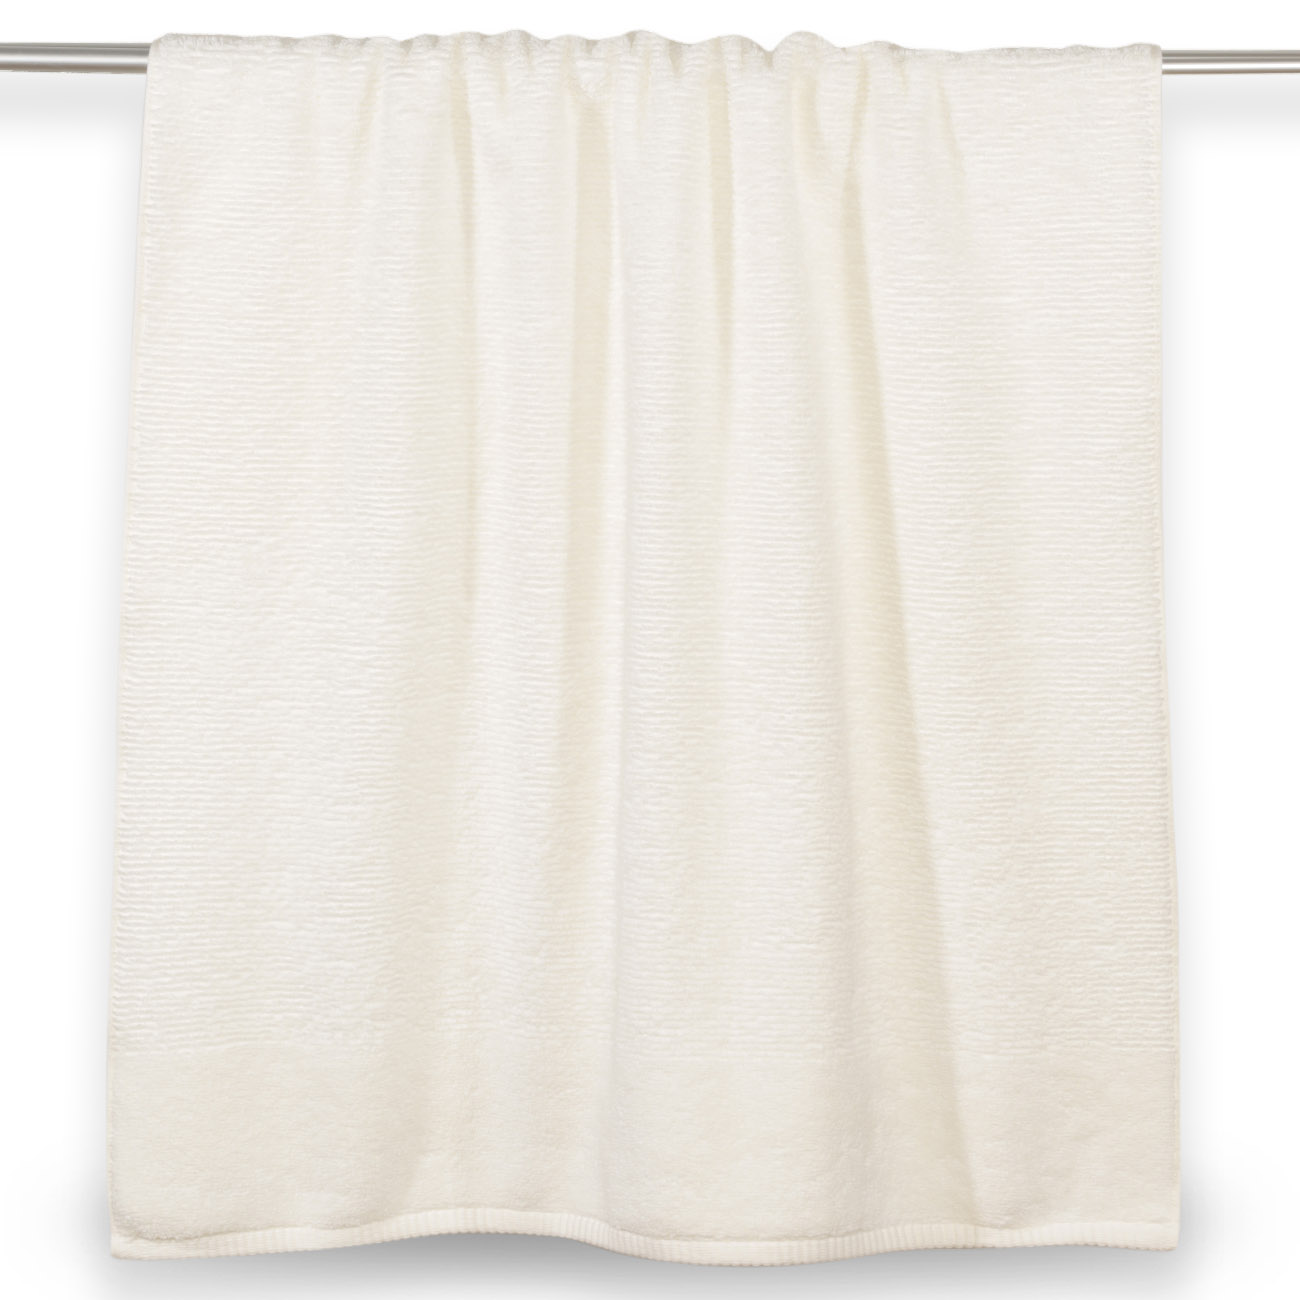 Towel, 70x140 cm, cotton, white, Terry cotton изображение № 2